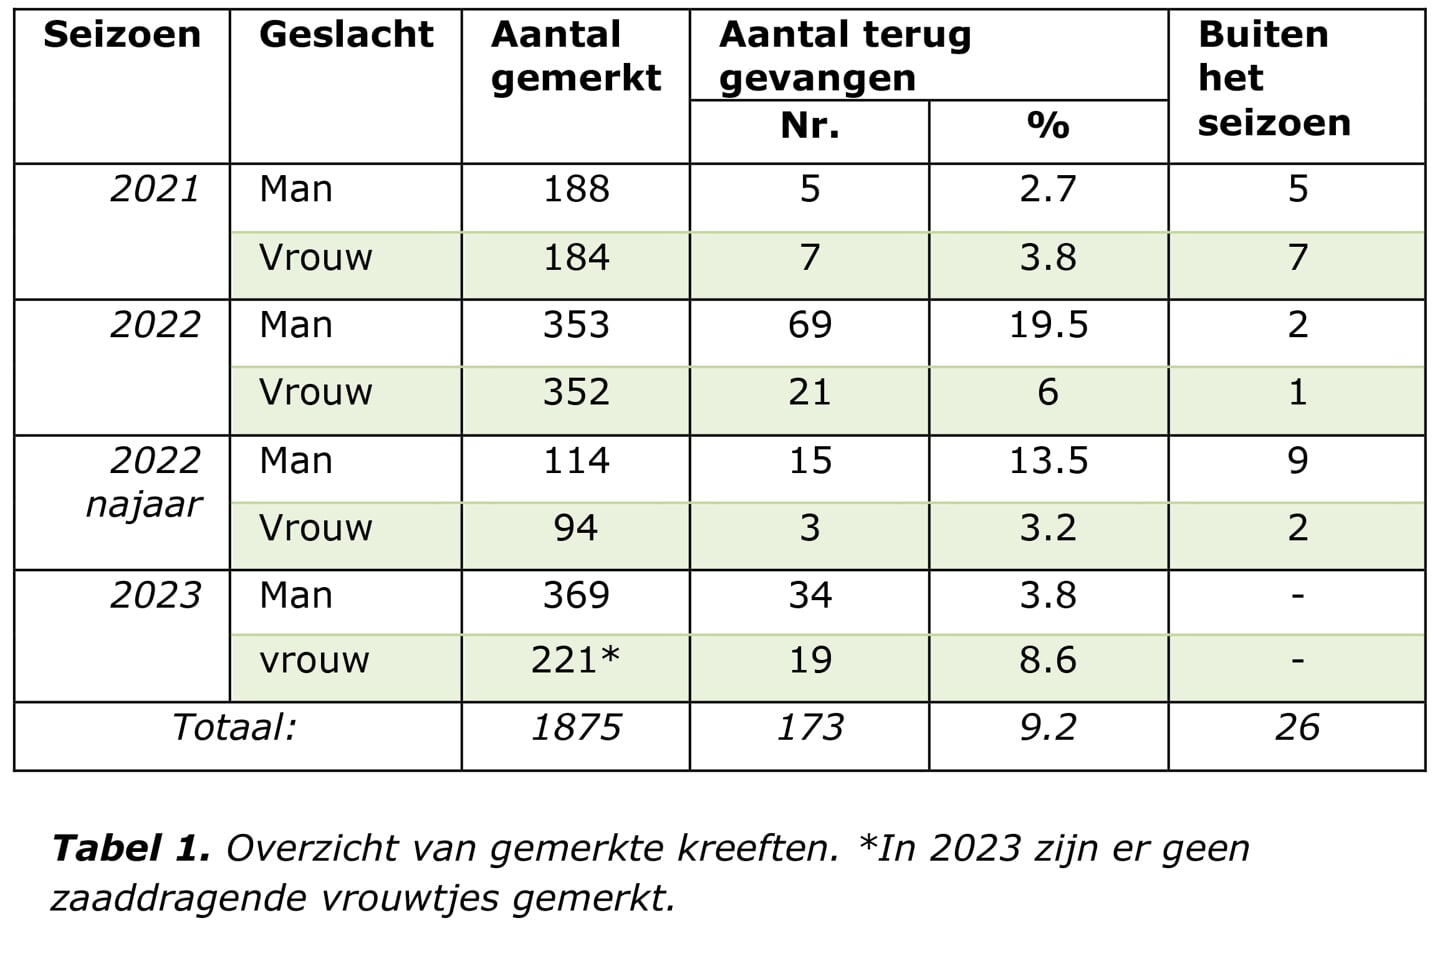 H Tabel 1. Overzicht van gemerkte kreeften. * In 2023 zijn er geen zaaddragende vrouwtjes gemerkt.